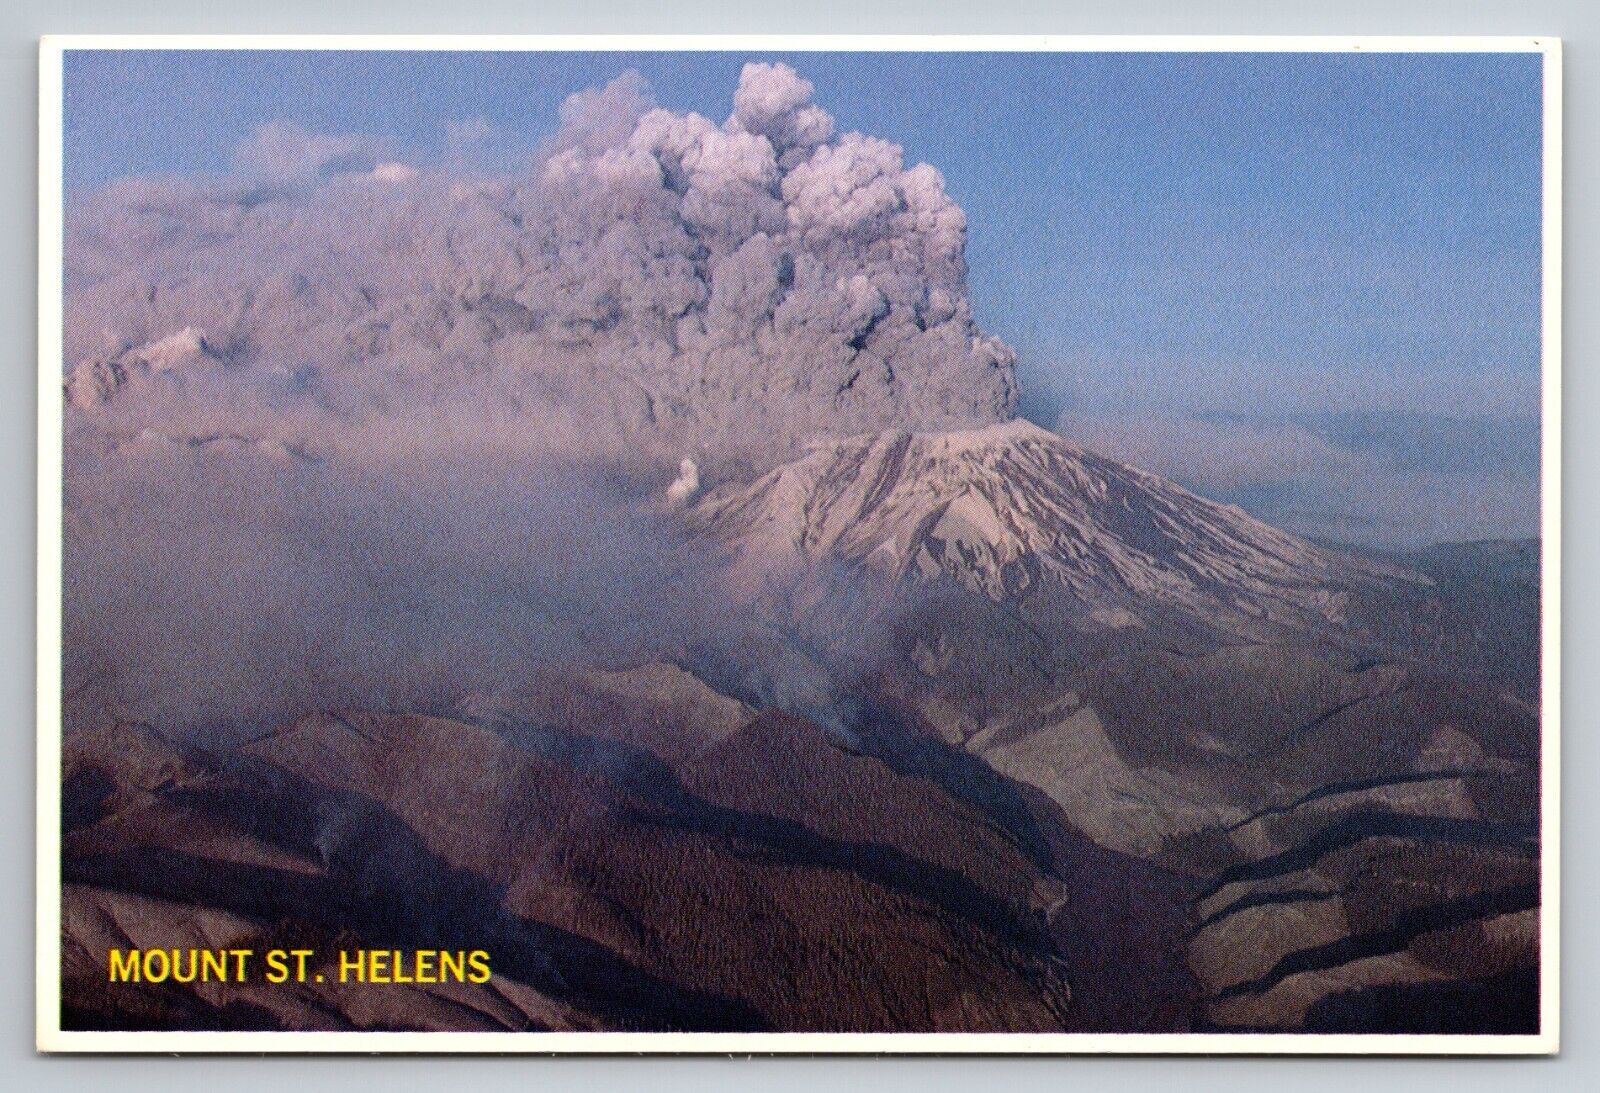 Mount St. Helens Big Bang Volcano Eruption Washington Vintage Unposted Postcard